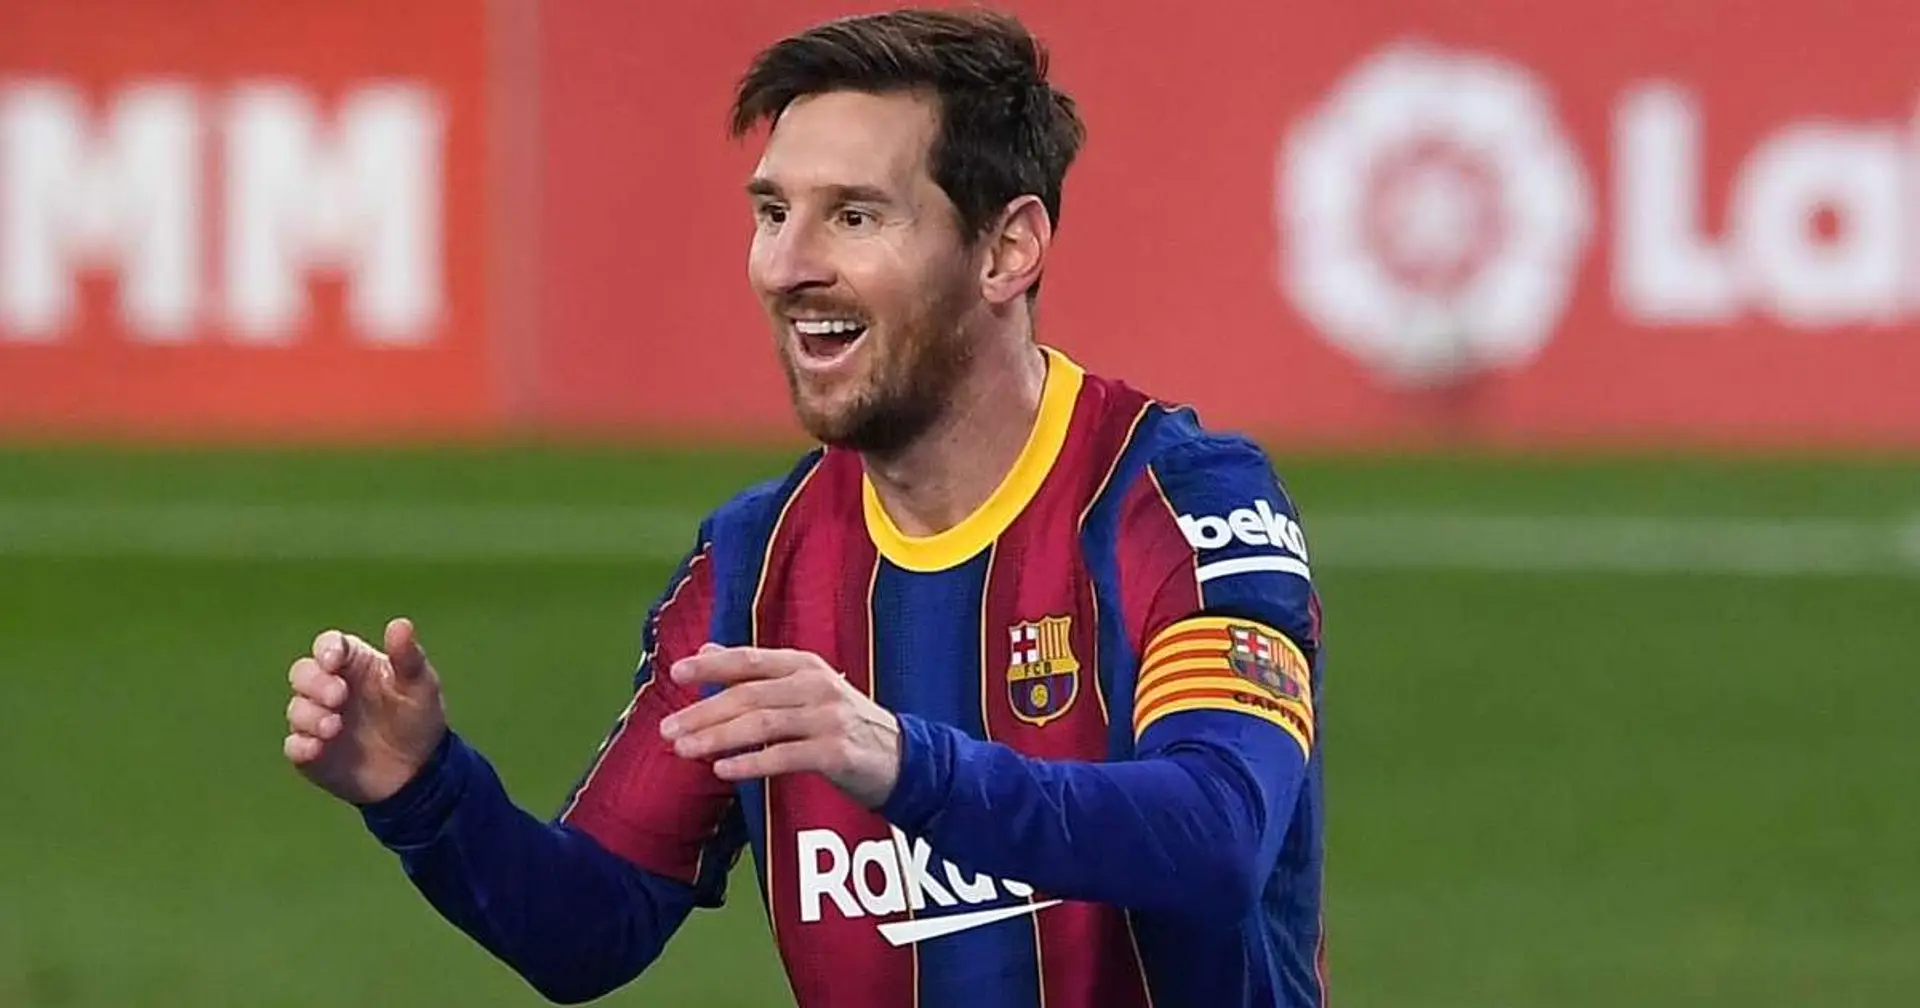 Mejor en LaLiga, noveno en el mundo y más: el valor de mercado actual de Leo Messi ordenado de 6 maneras